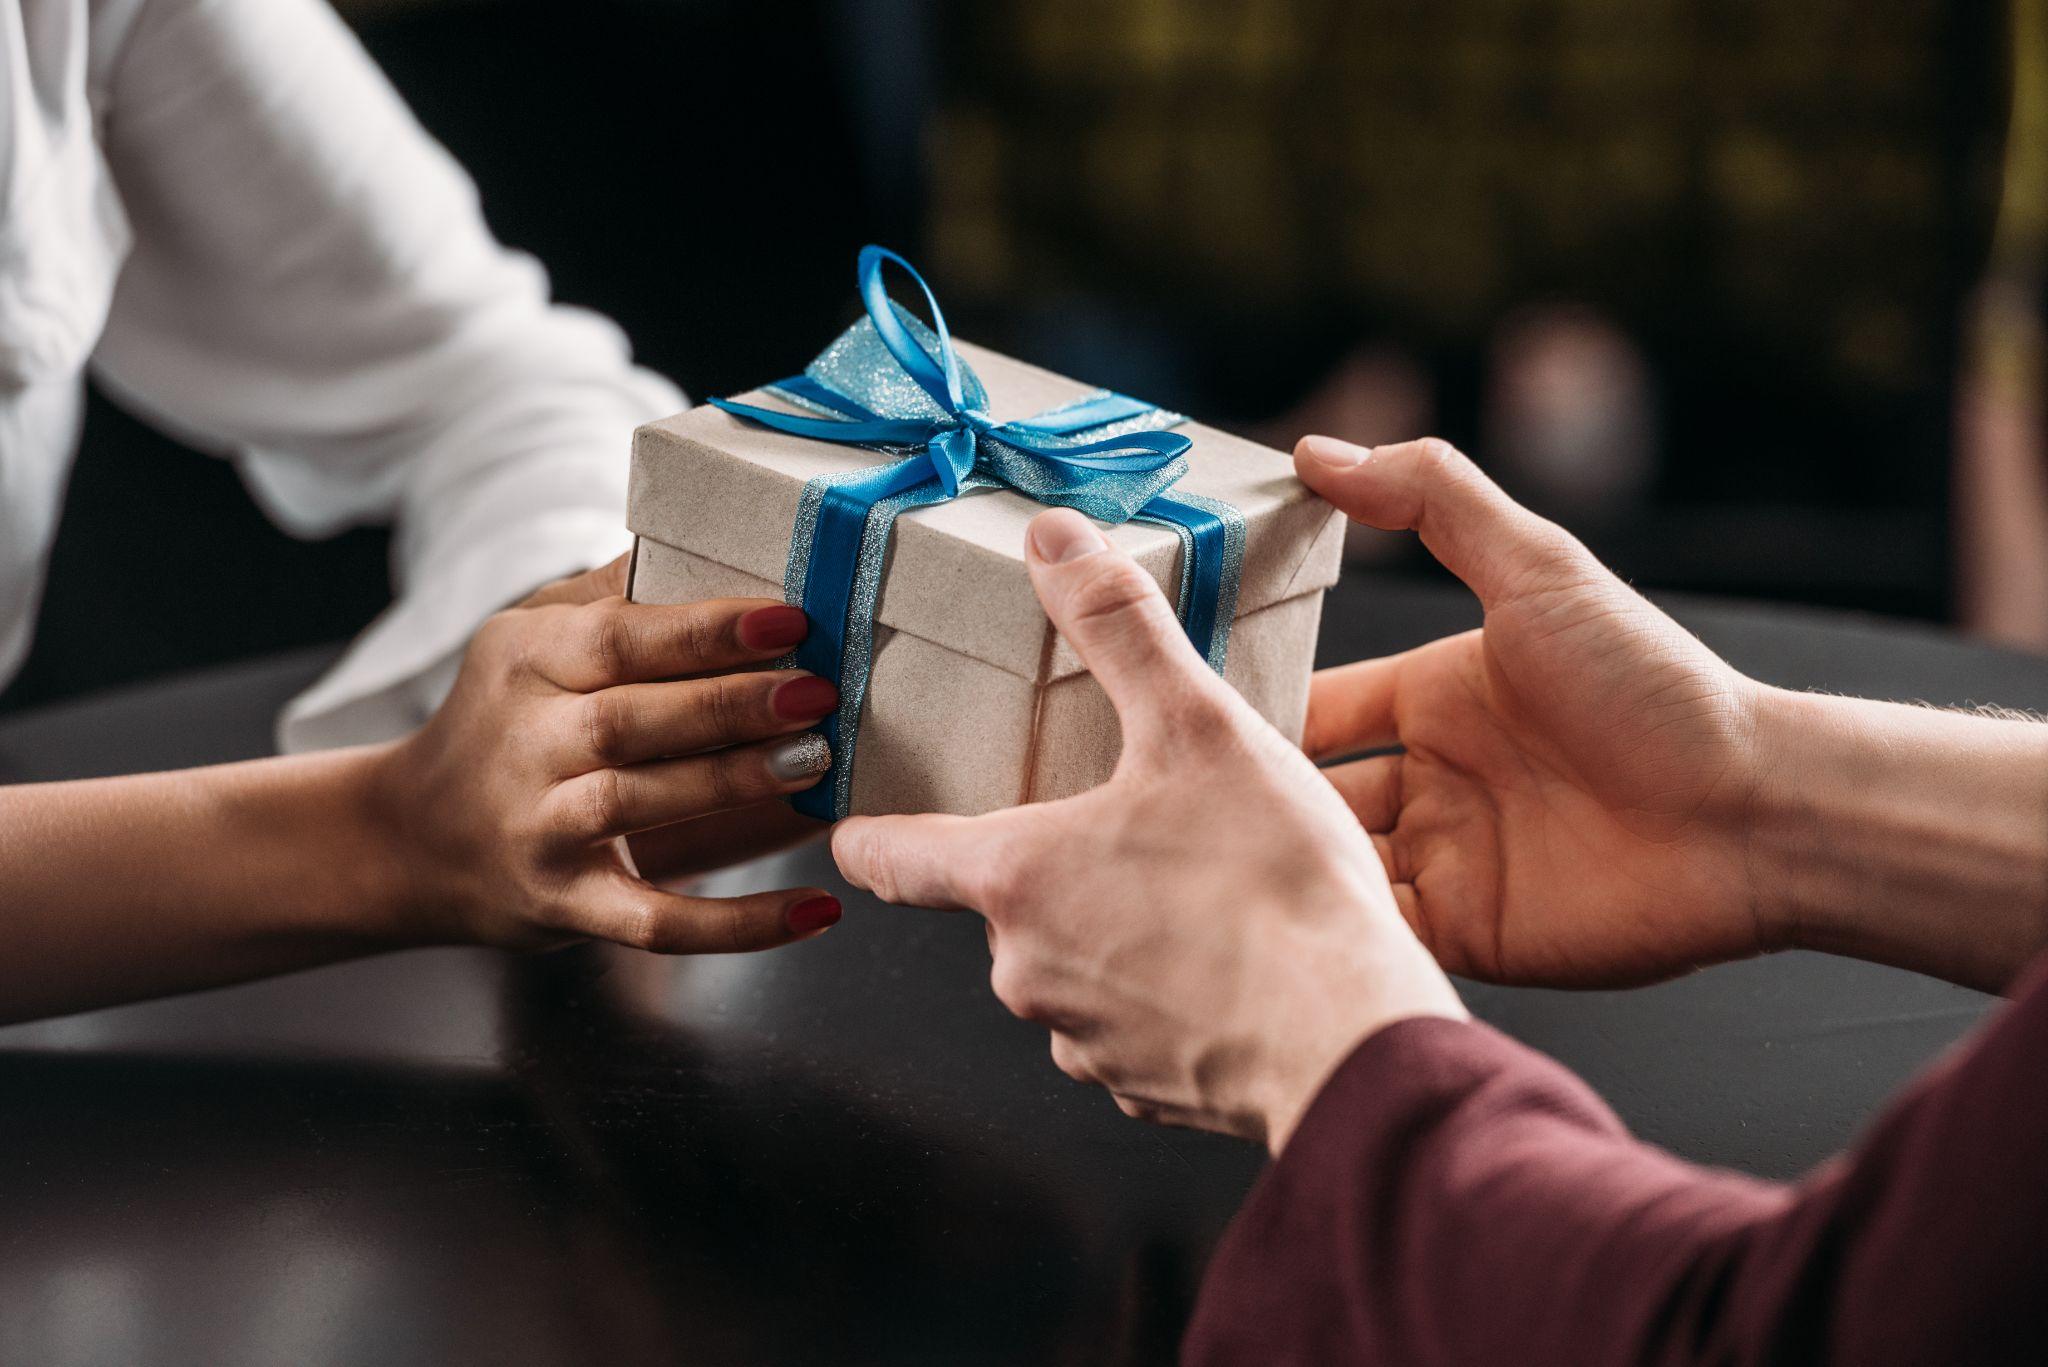 Offers received. Вручение подарка. Дарение подарков. Подарок в руках. Вручает подарок.